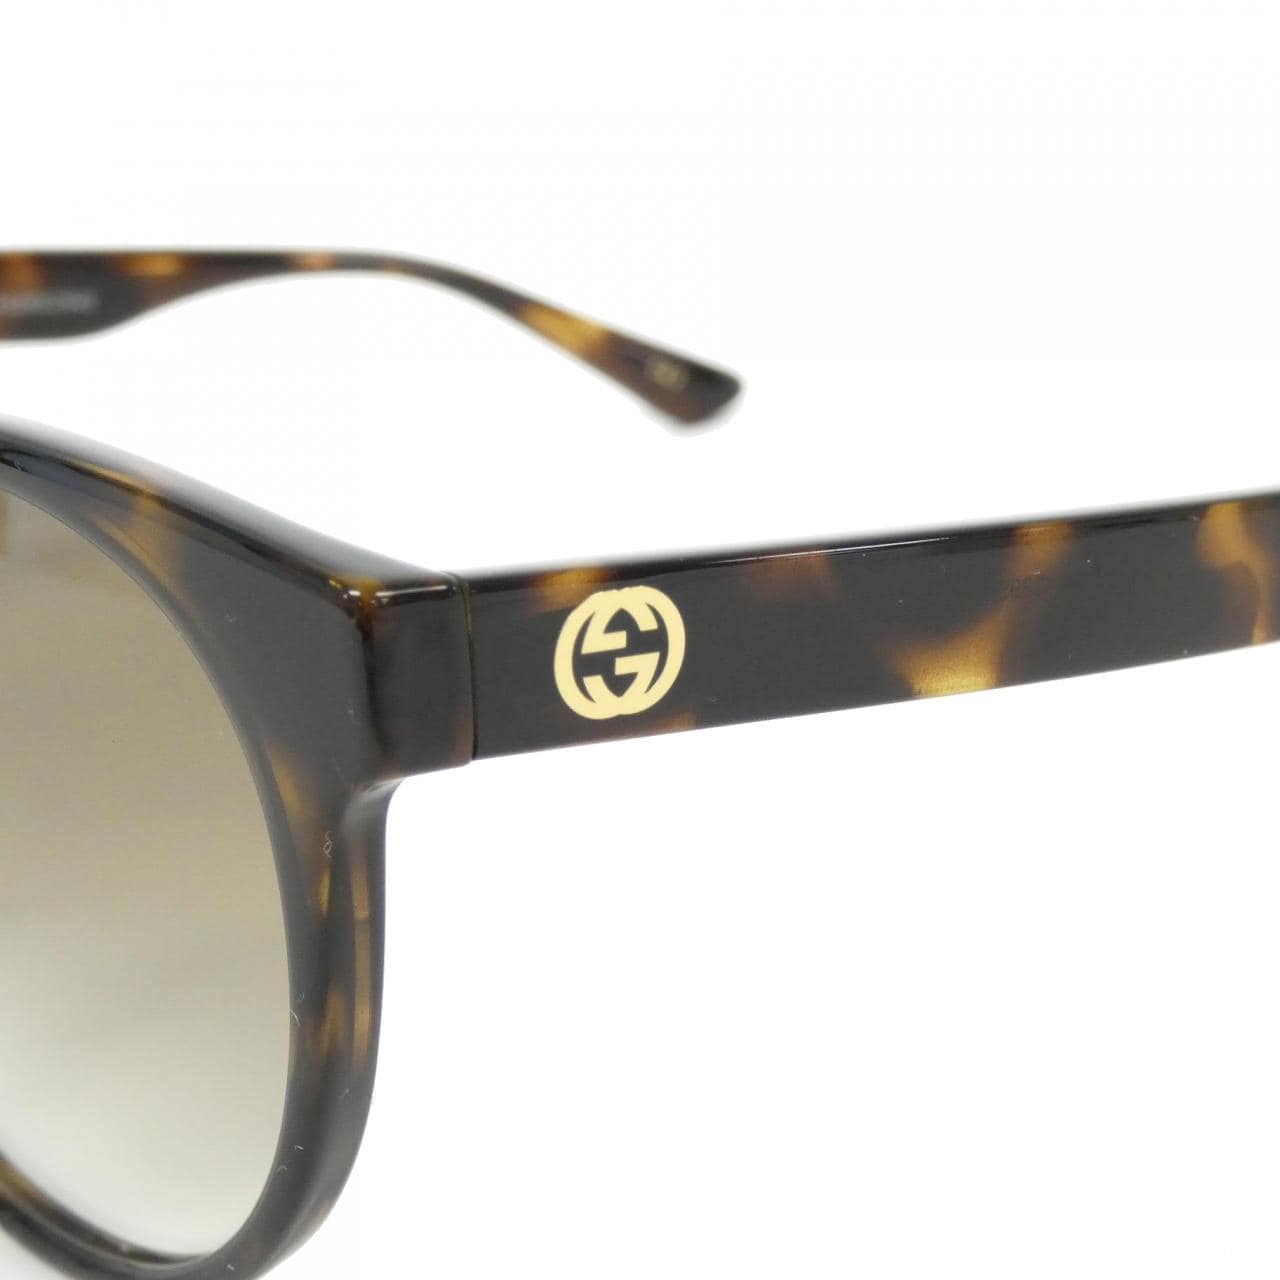 [BRAND NEW] Gucci 1339SK Sunglasses